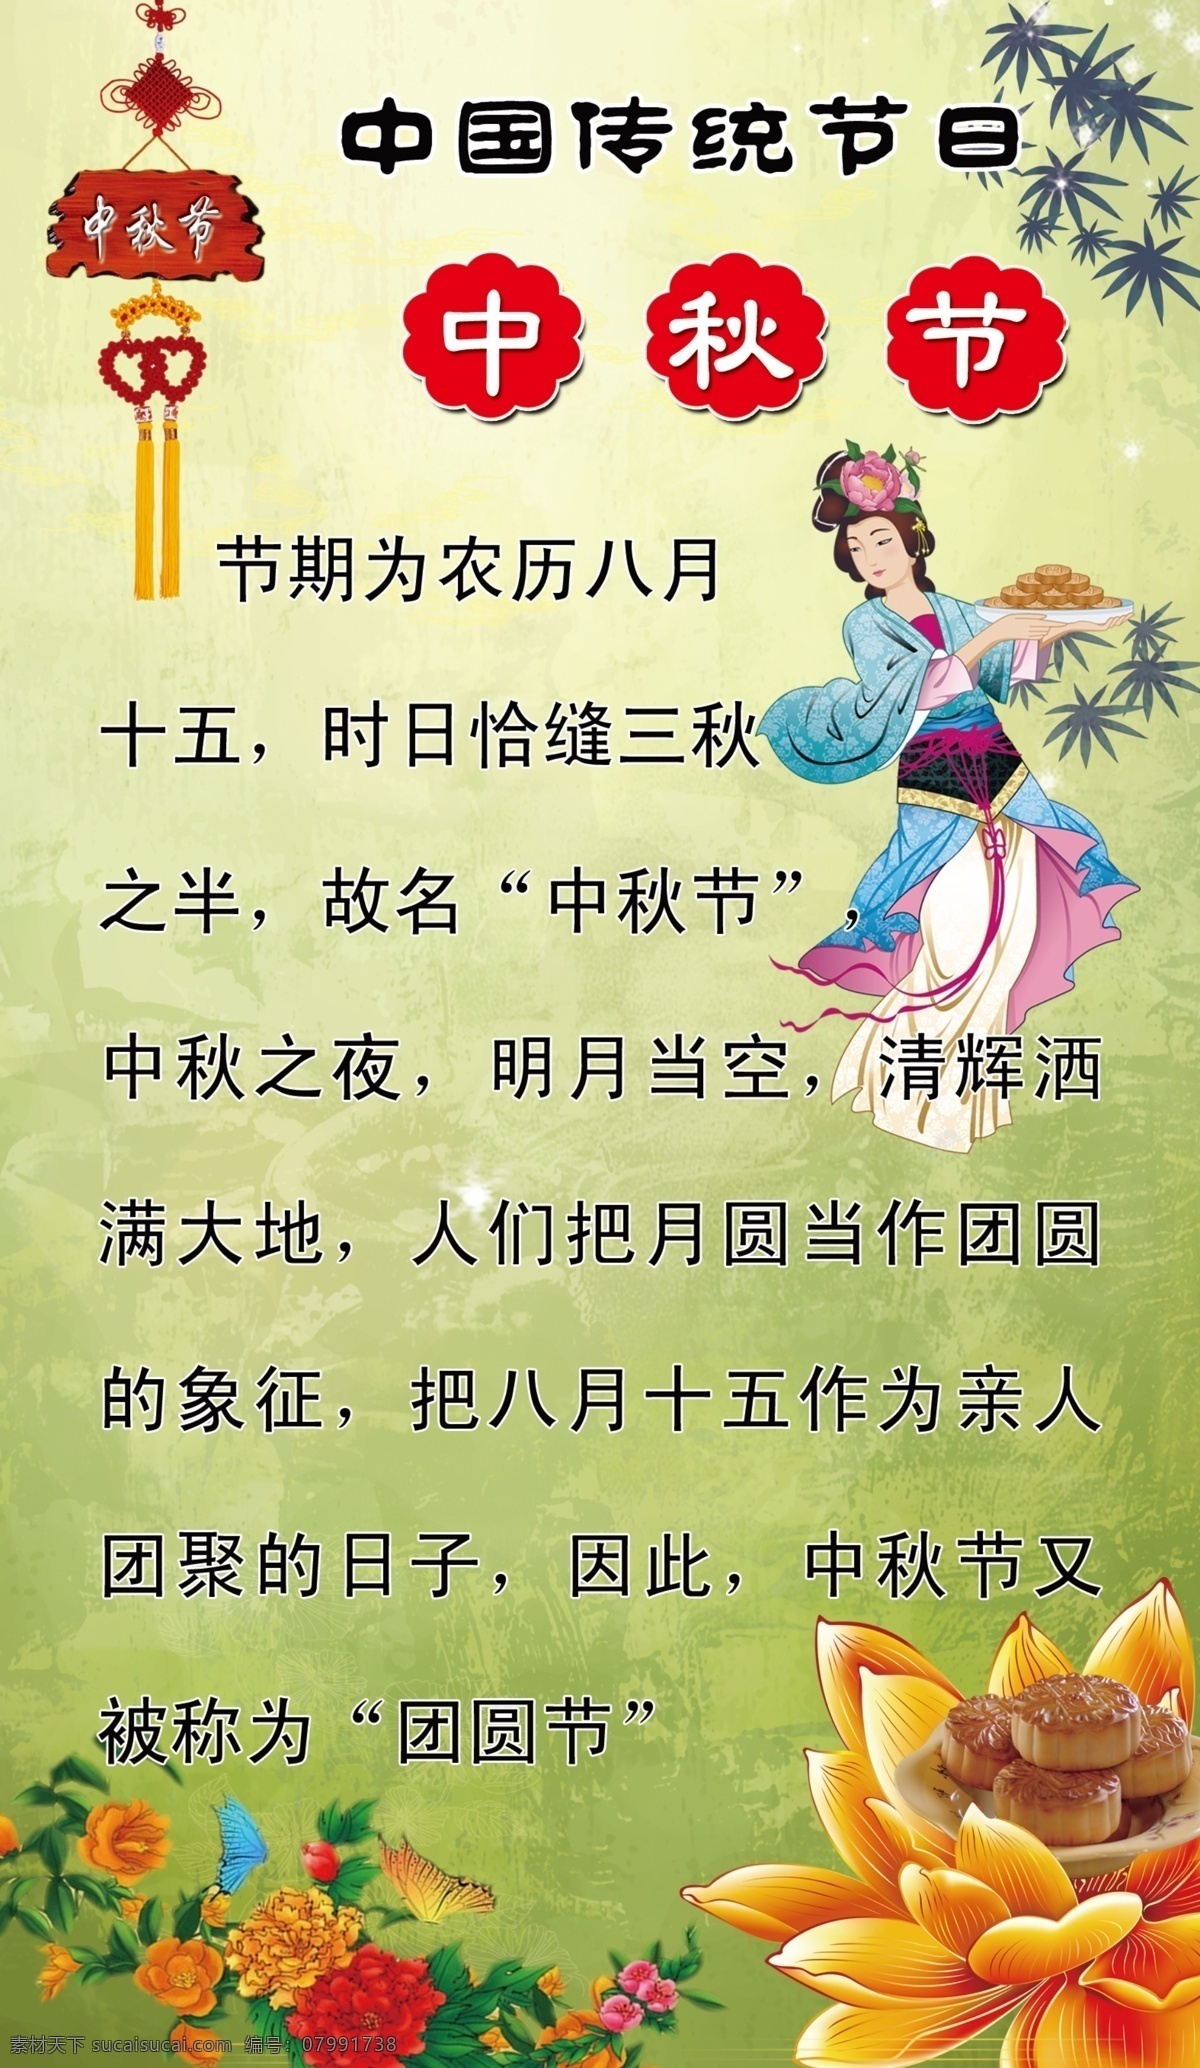 中秋节 知识 展板 中国传统节日 牡丹花 嫦娥 月饼 团圆节 展板模板 广告设计模板 源文件